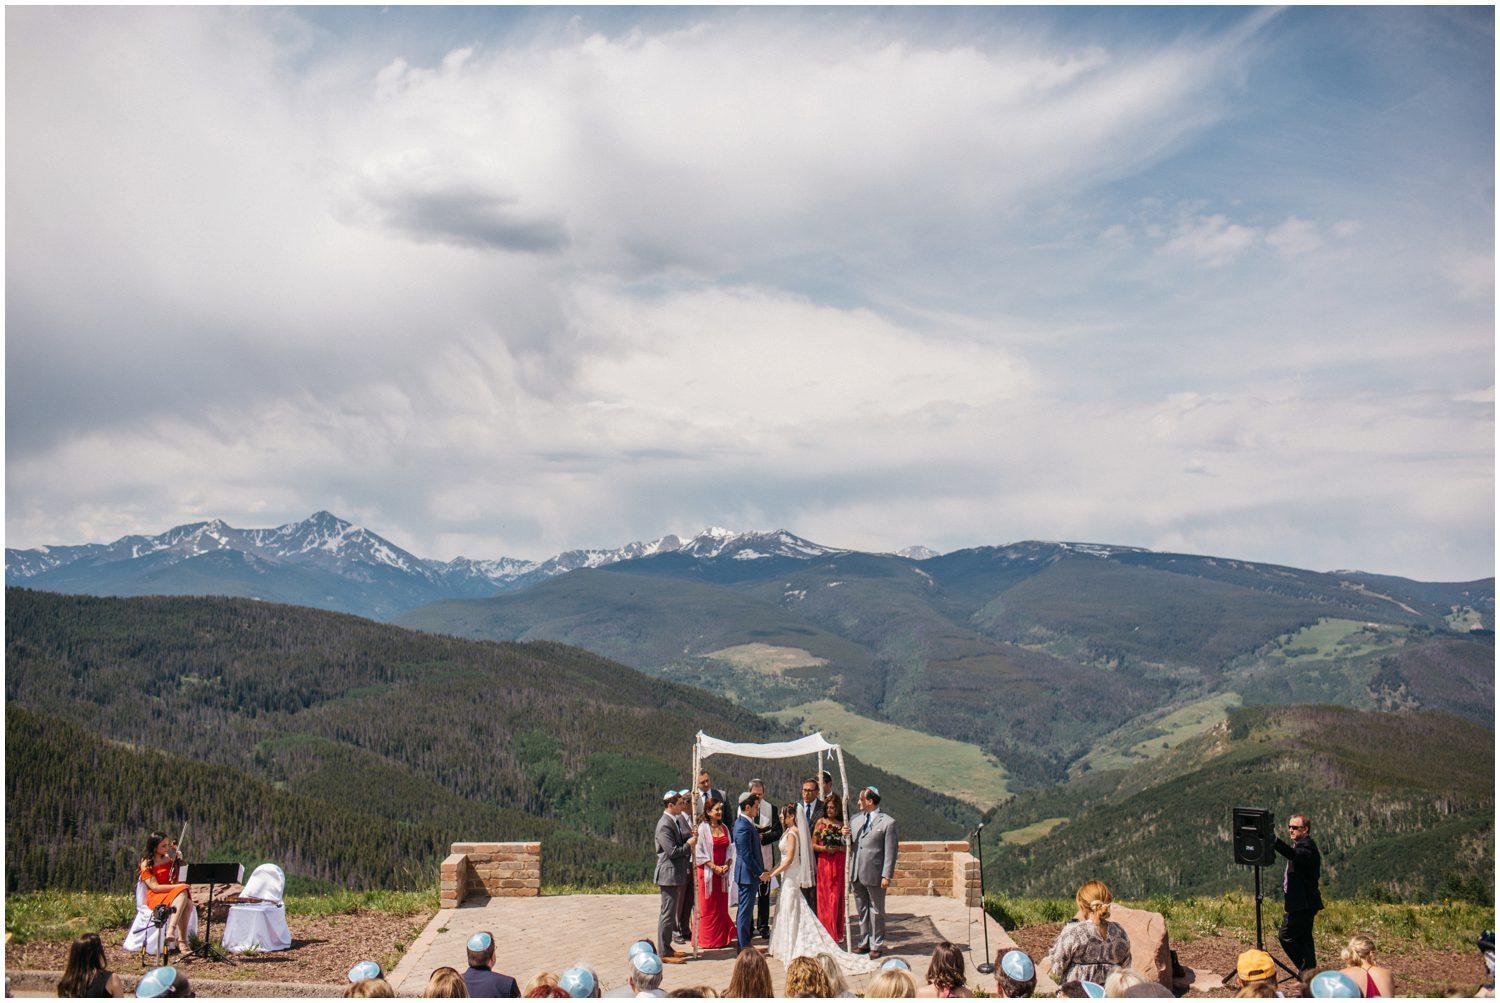 Vail Mountain Wedding Deck Photos, Vail Colorado Wedding Photographer, Colorado Mountain Wedding Photographer, Colorado Wedding Photographer, Vail Colorado Wedding, Eagle Colorado Wedding, Breckenridge Colorado Wedding